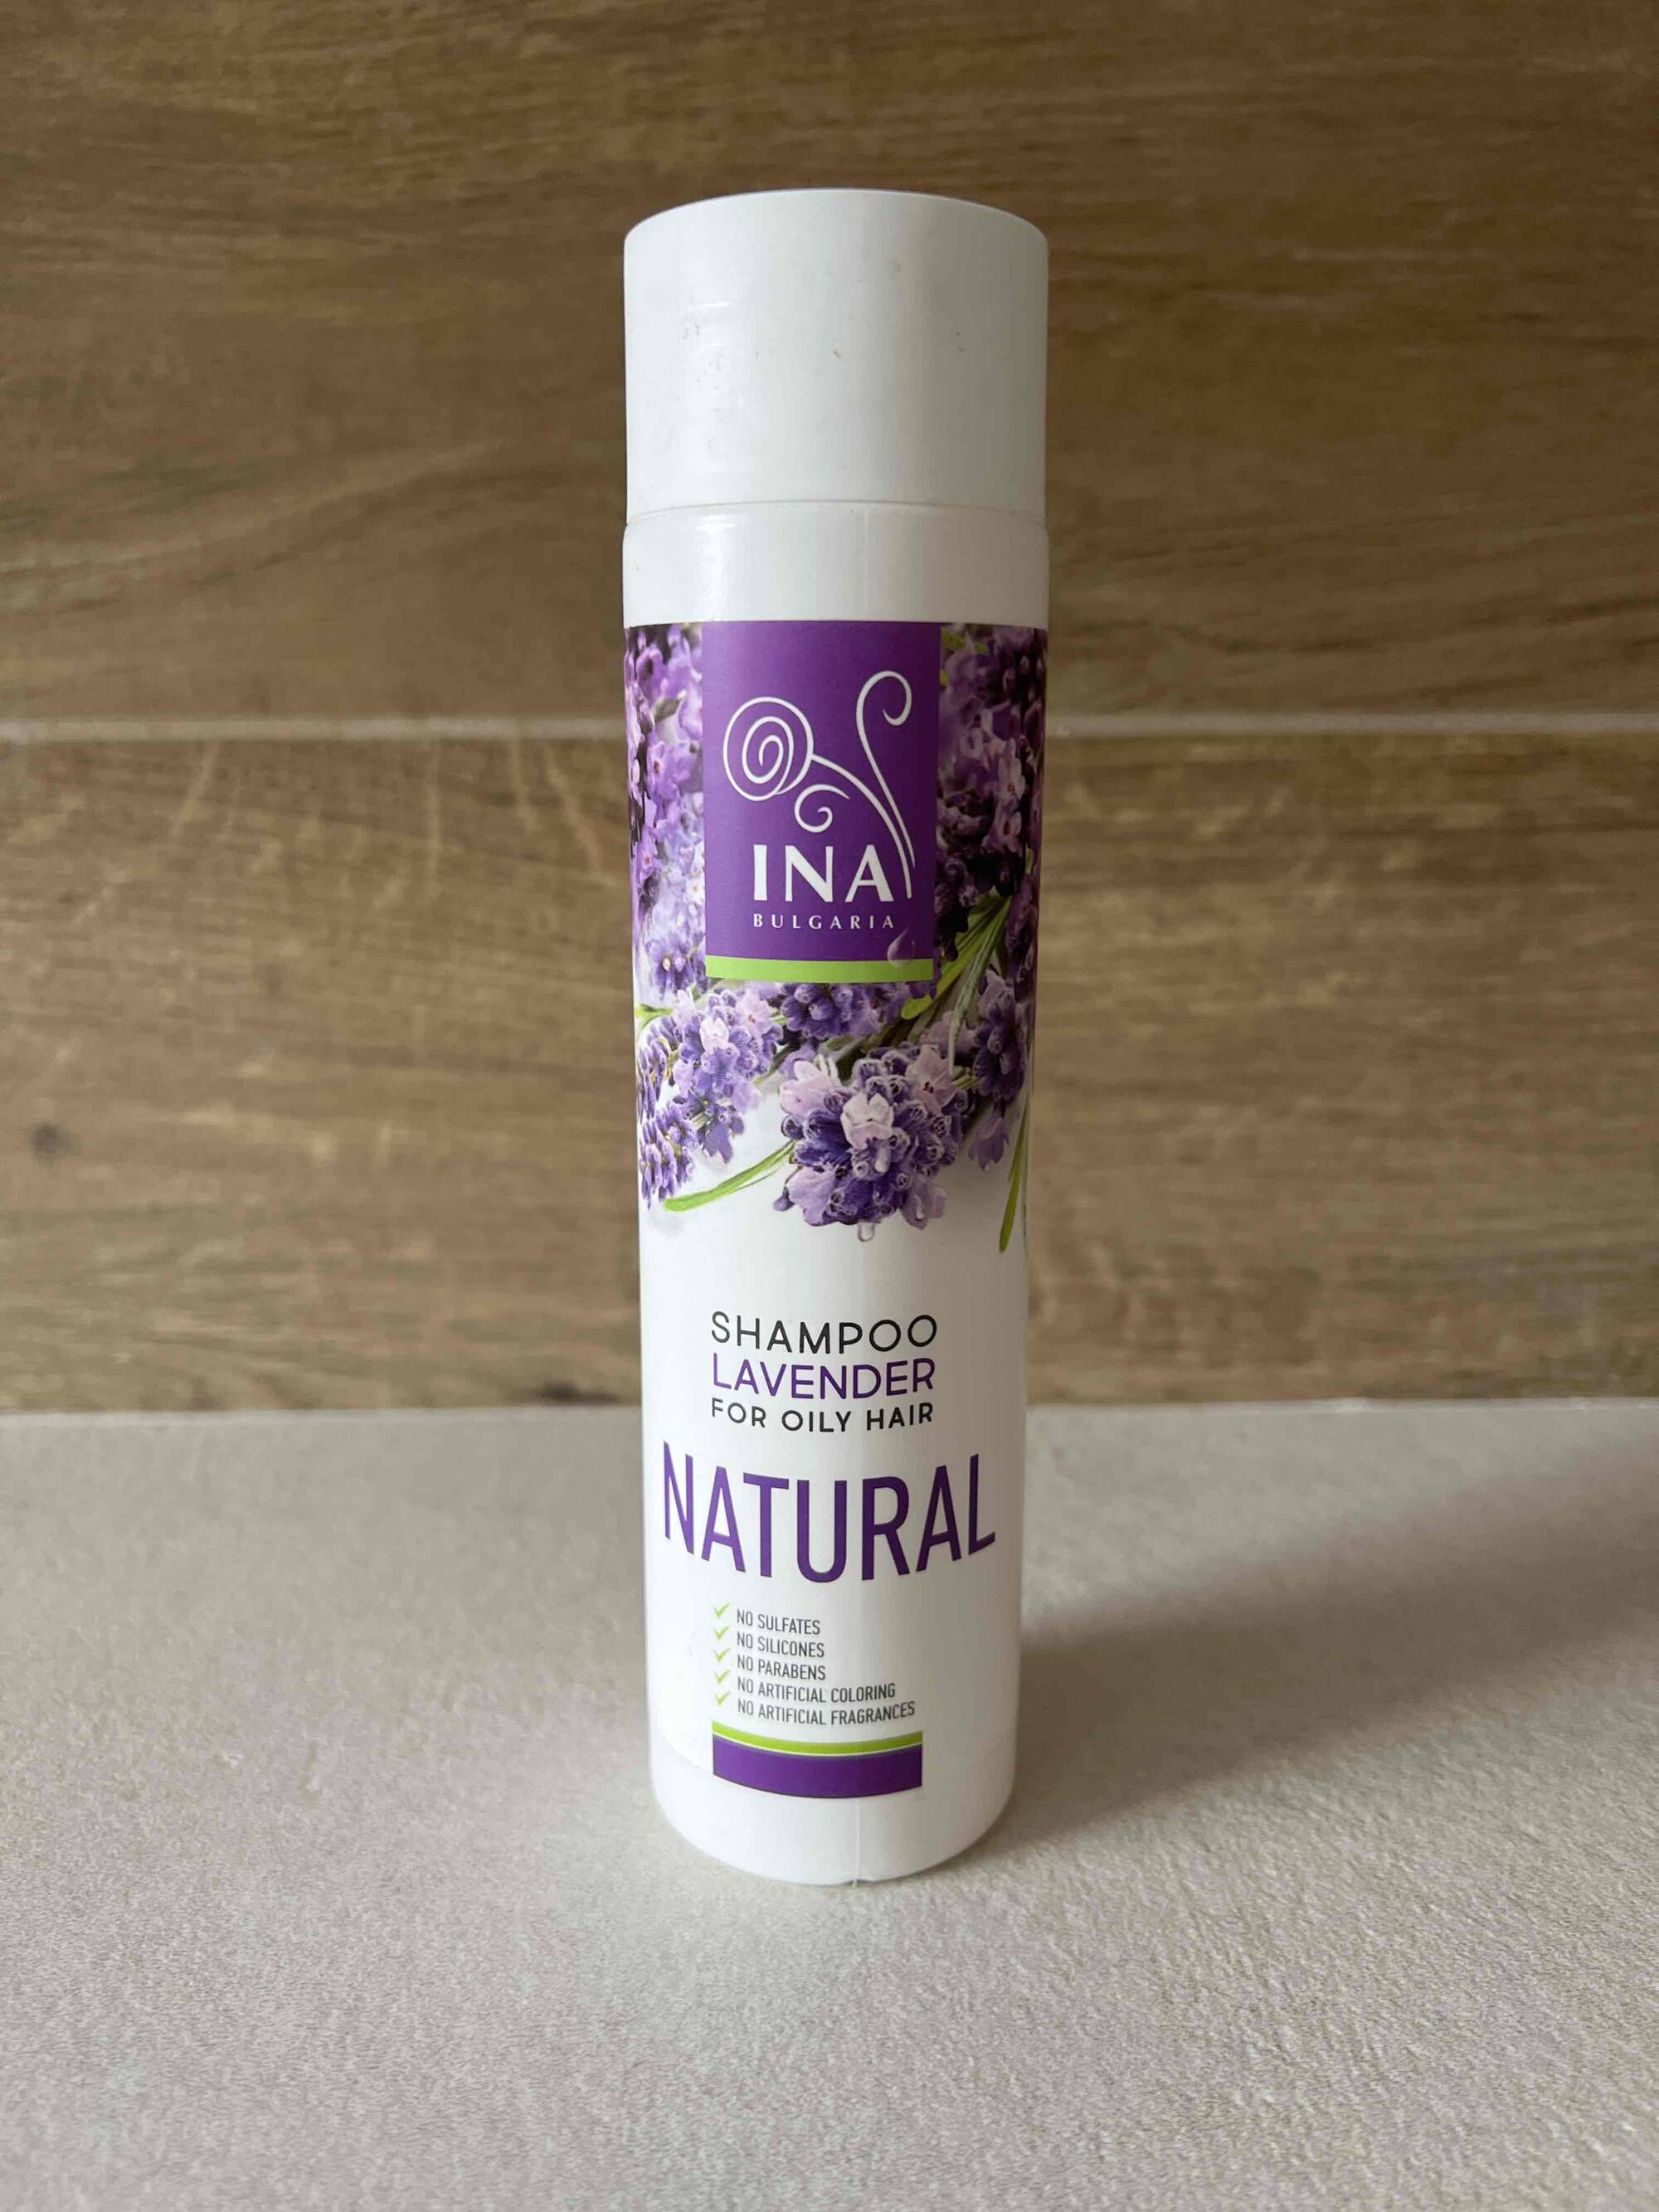 INA - Shampoo lavender natural 